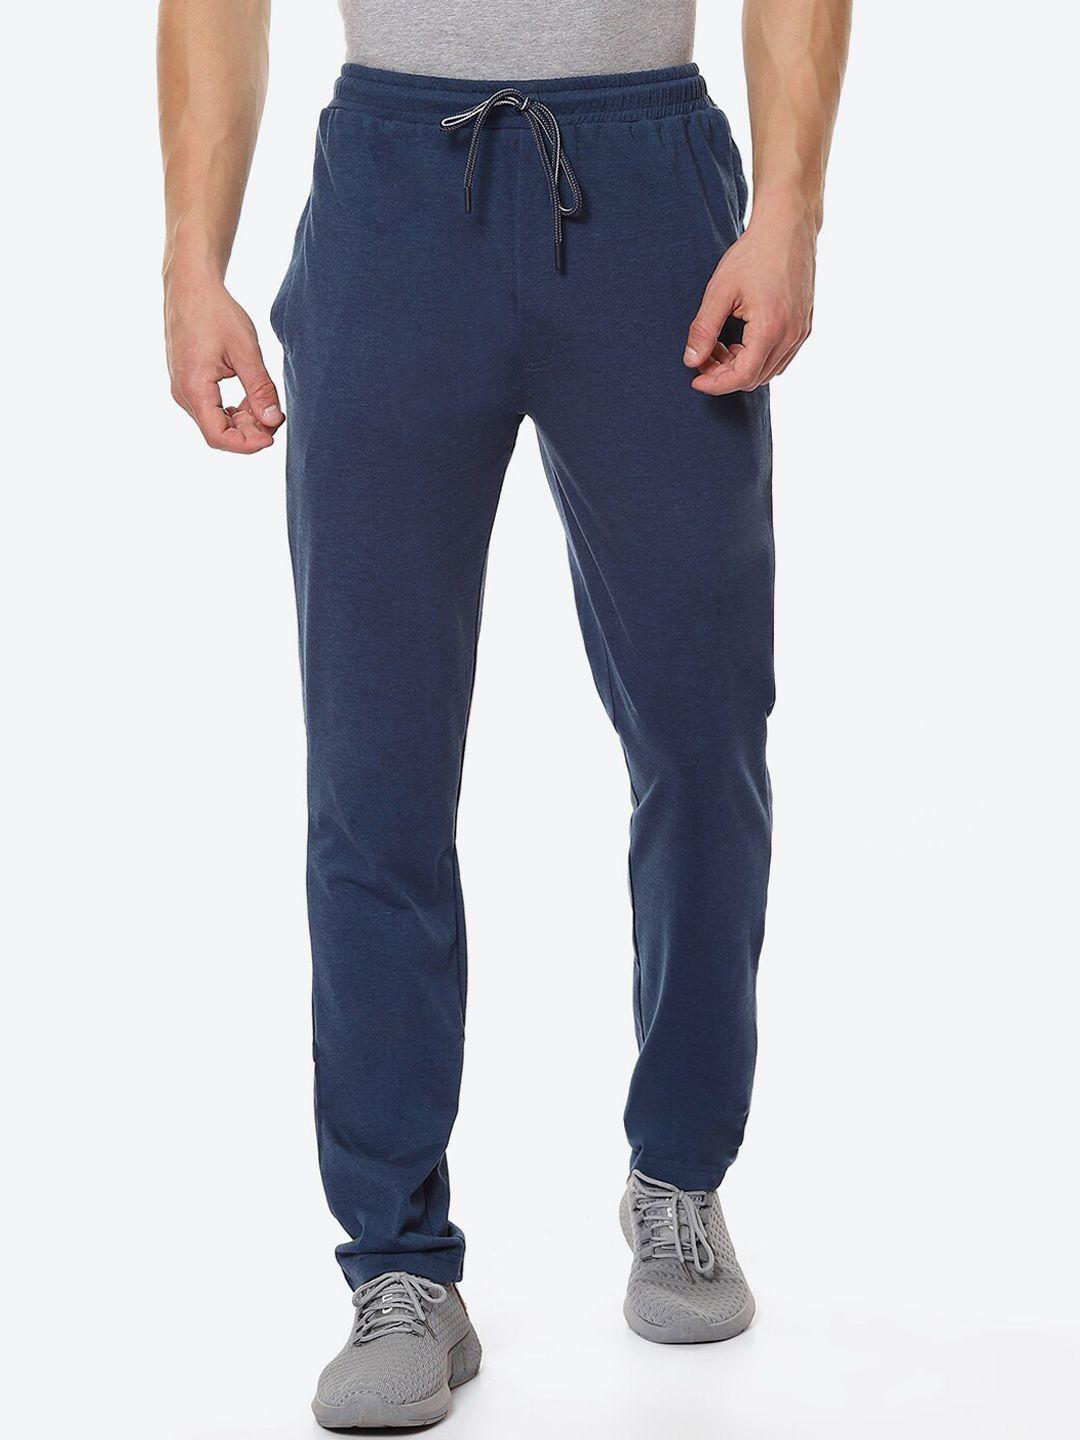 vinenzia men navy blue solid pure cotton track pants